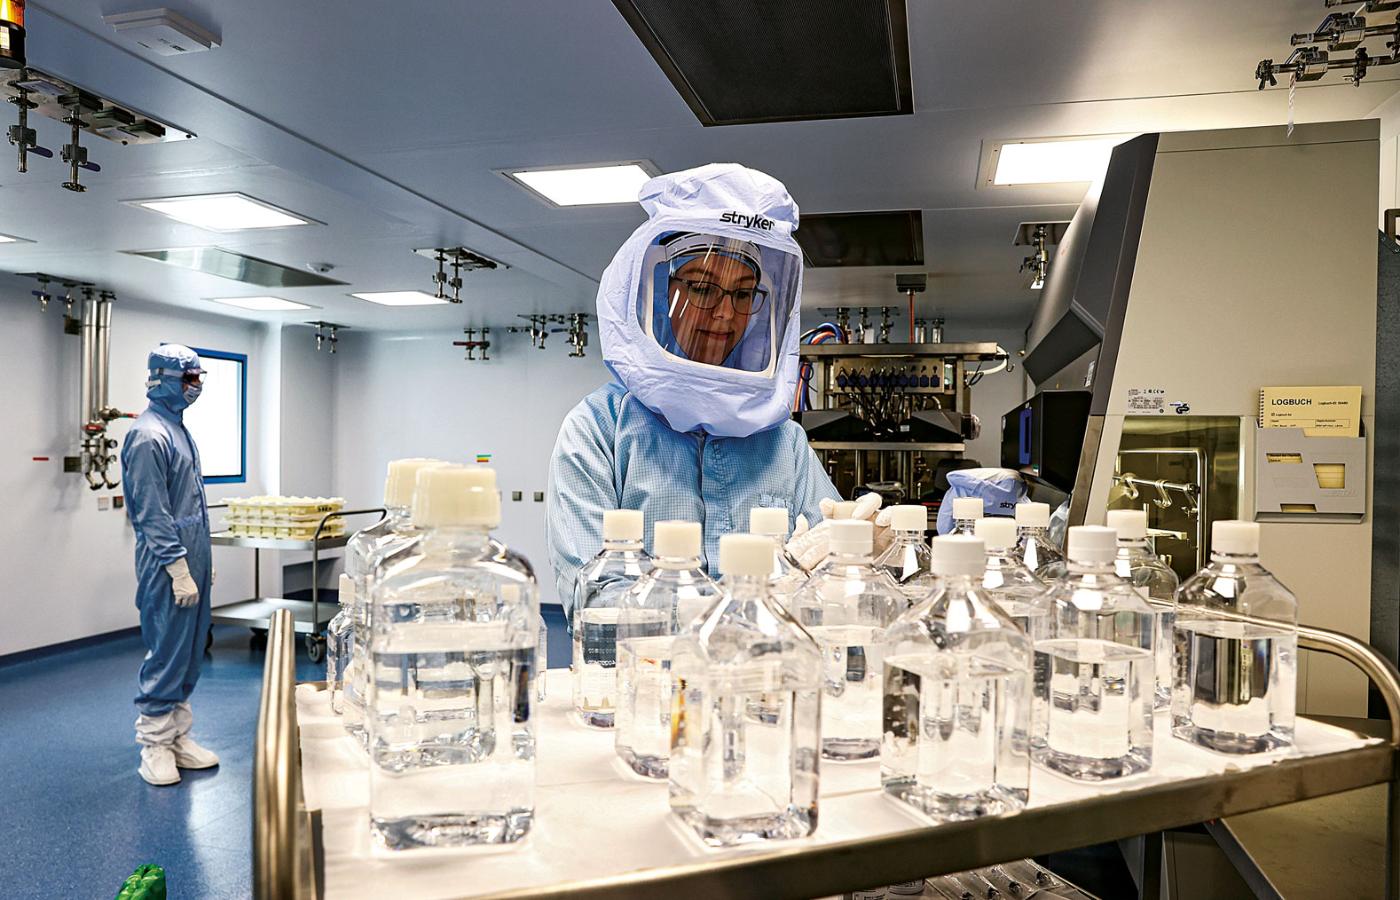 Laboratorium firmy BioNTech w Marburgu, gdzie produkuje się mRNA do szczepionki przeciwko Covid-19.